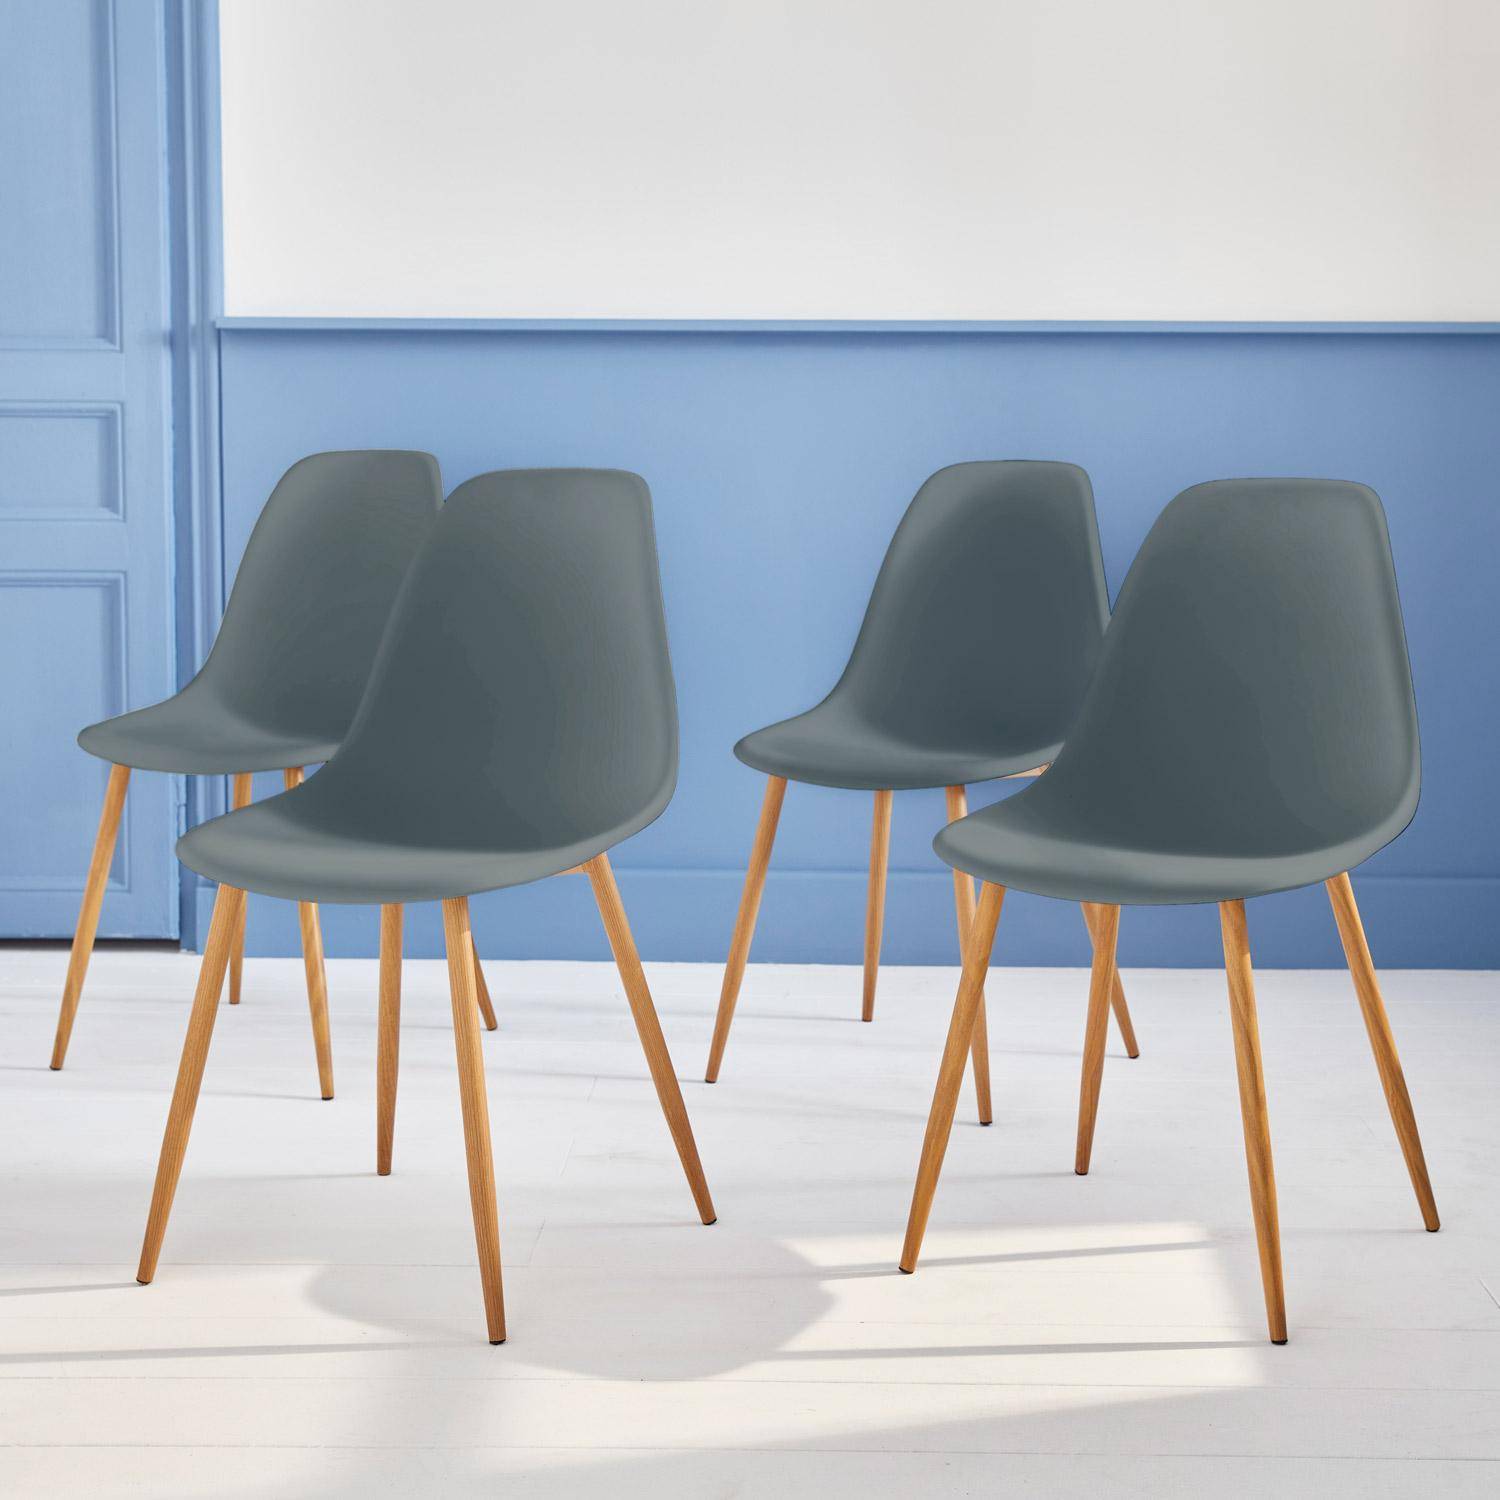 Juego de 4 sillas escandinavas - Lars - patas de metal color madera, sillas de una plaza, color gris,sweeek,Photo1